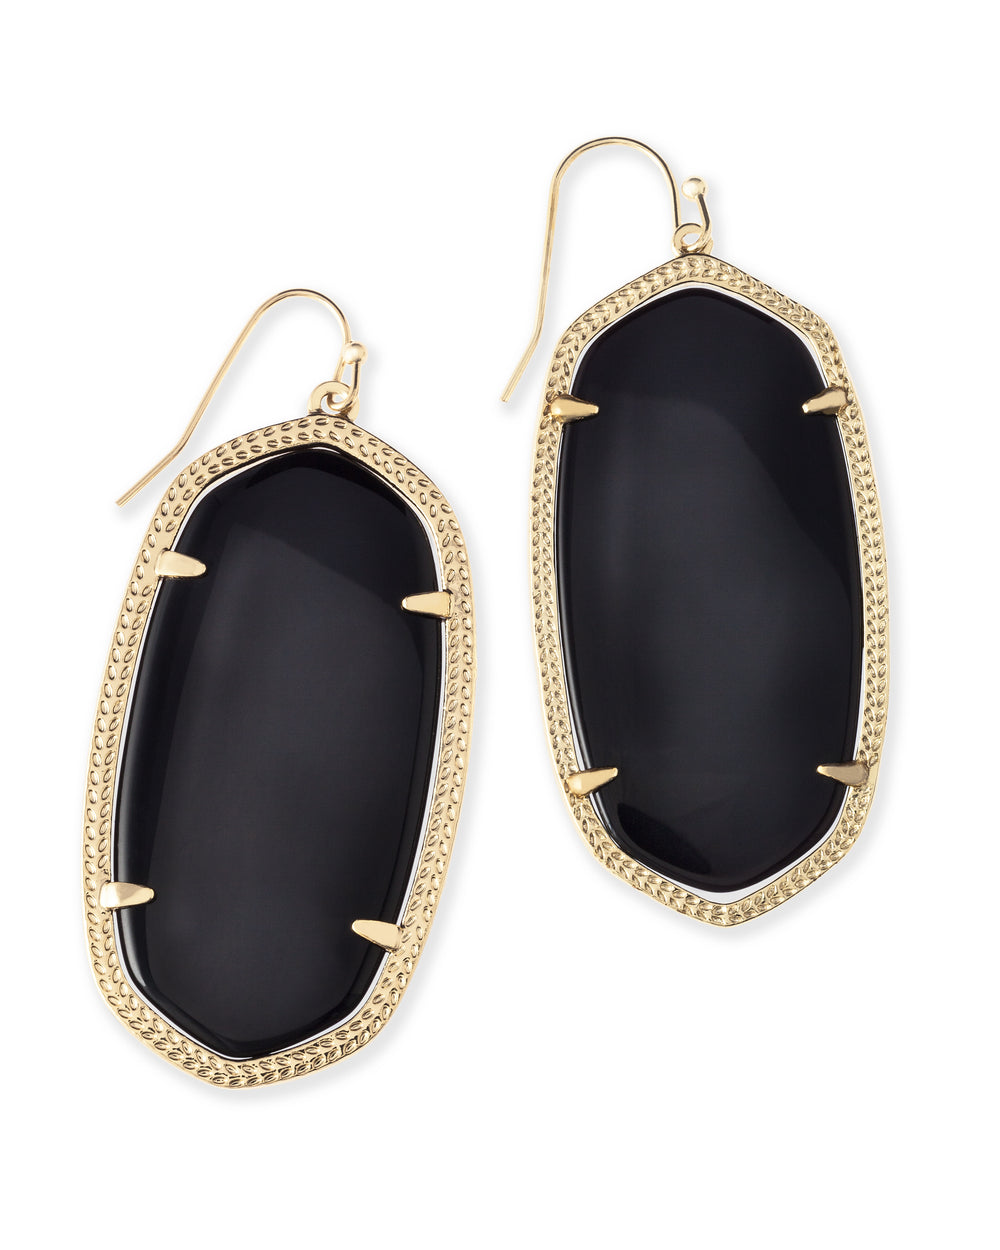 Danielle Gold Drop Earrings in Black Opaque Glass